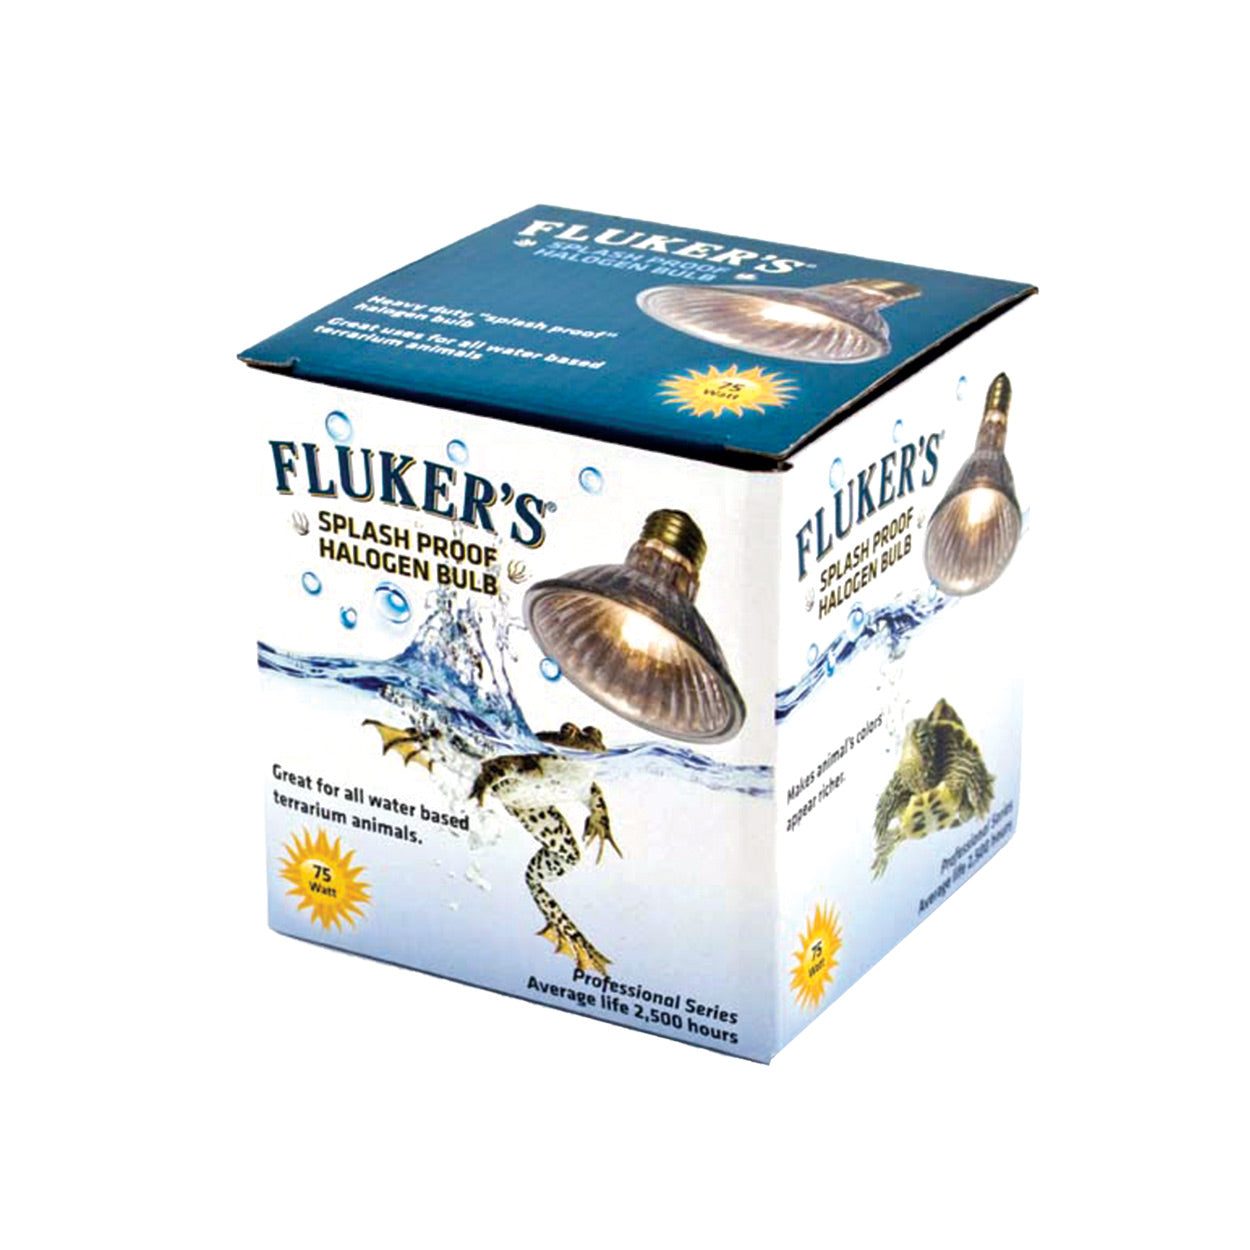 Fluker's 50 Watt Splash Proof Bulb